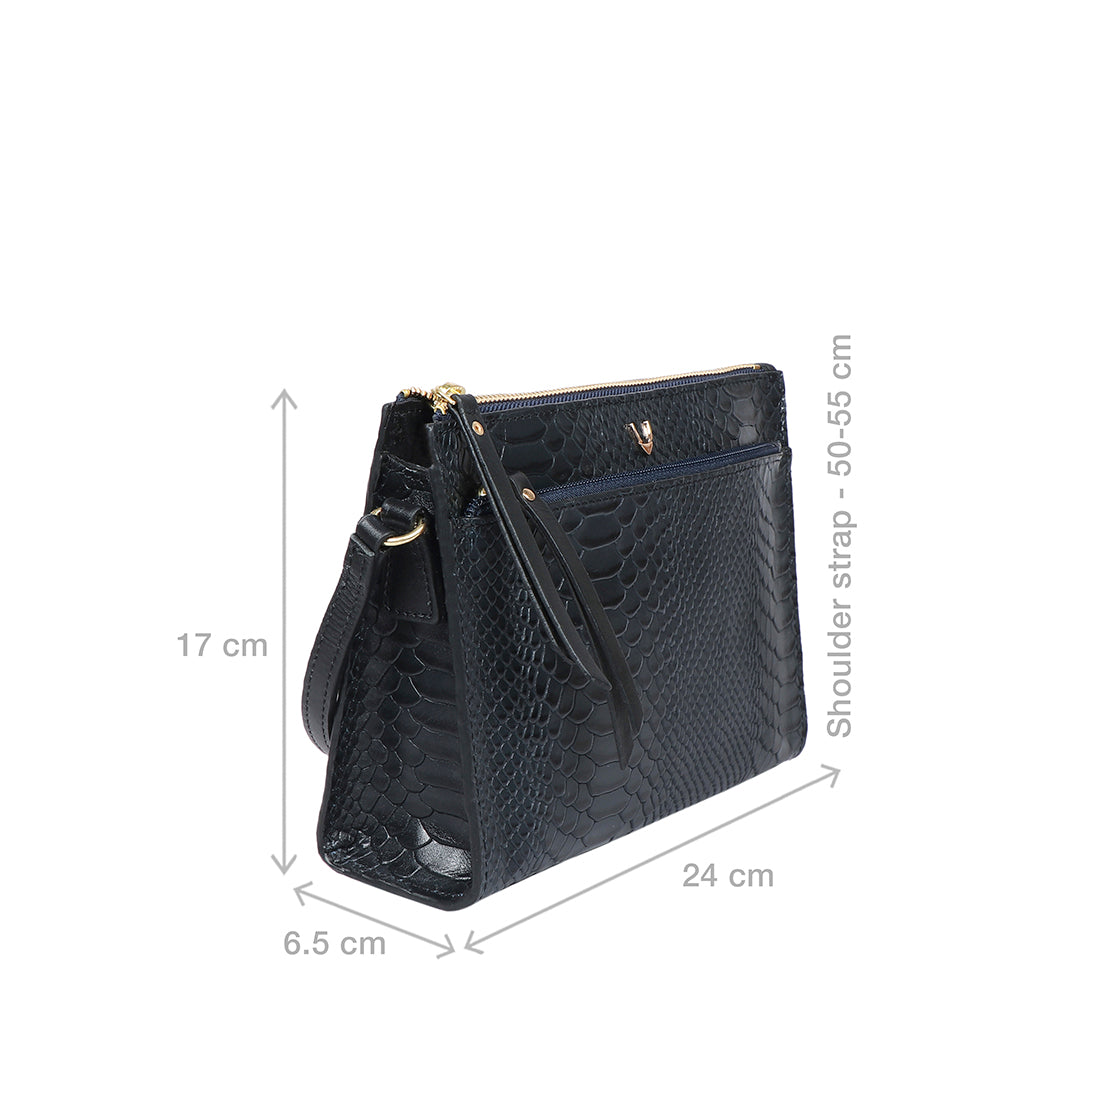 Buy Black 3 A.M 02 Sling Bag Online - Hidesign